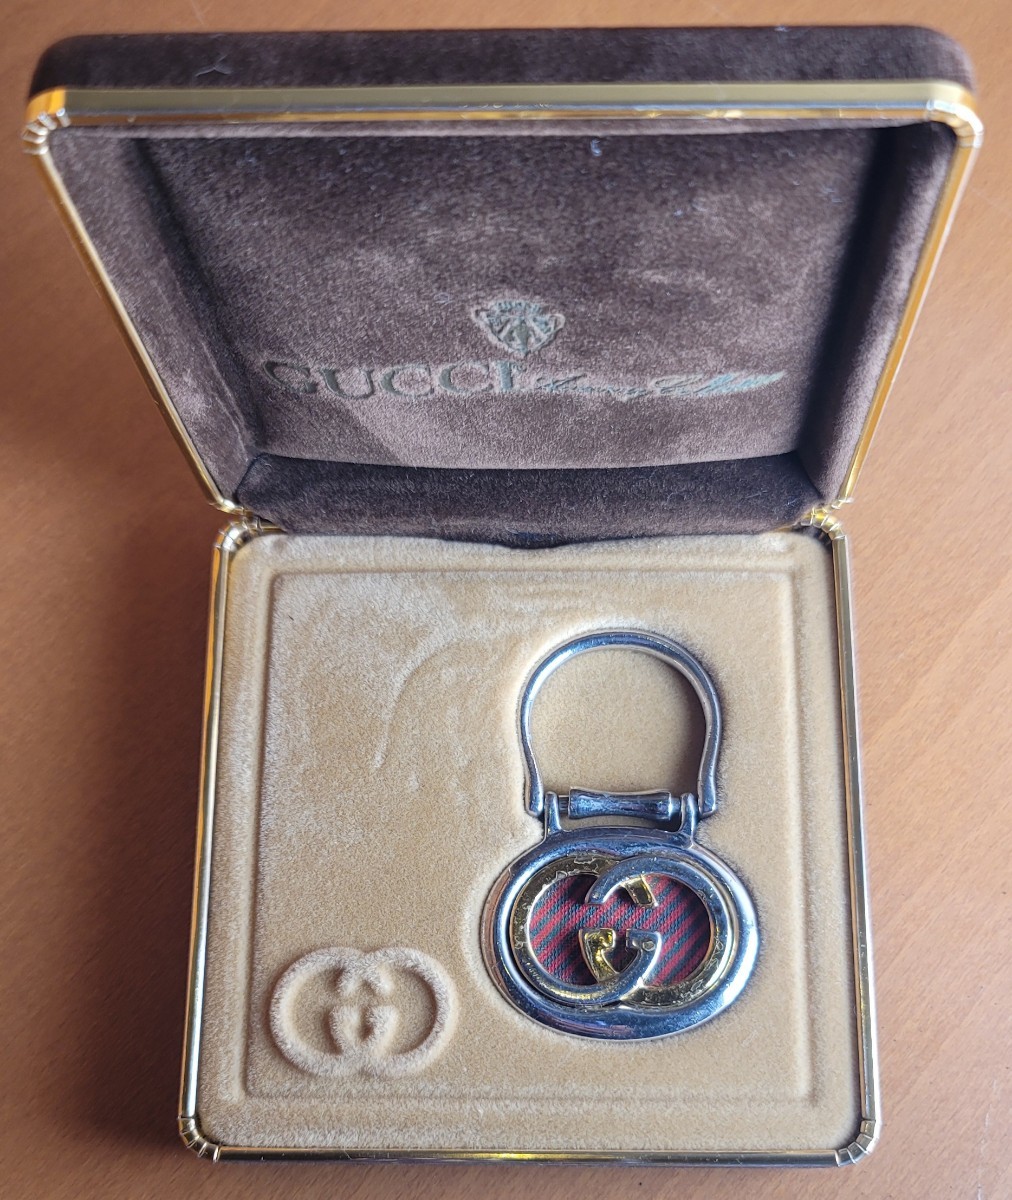 GUCCI Old Gucci брелок для ключа серебряный Gold комбинированный цвет с коробкой б/у текущее состояние товар 